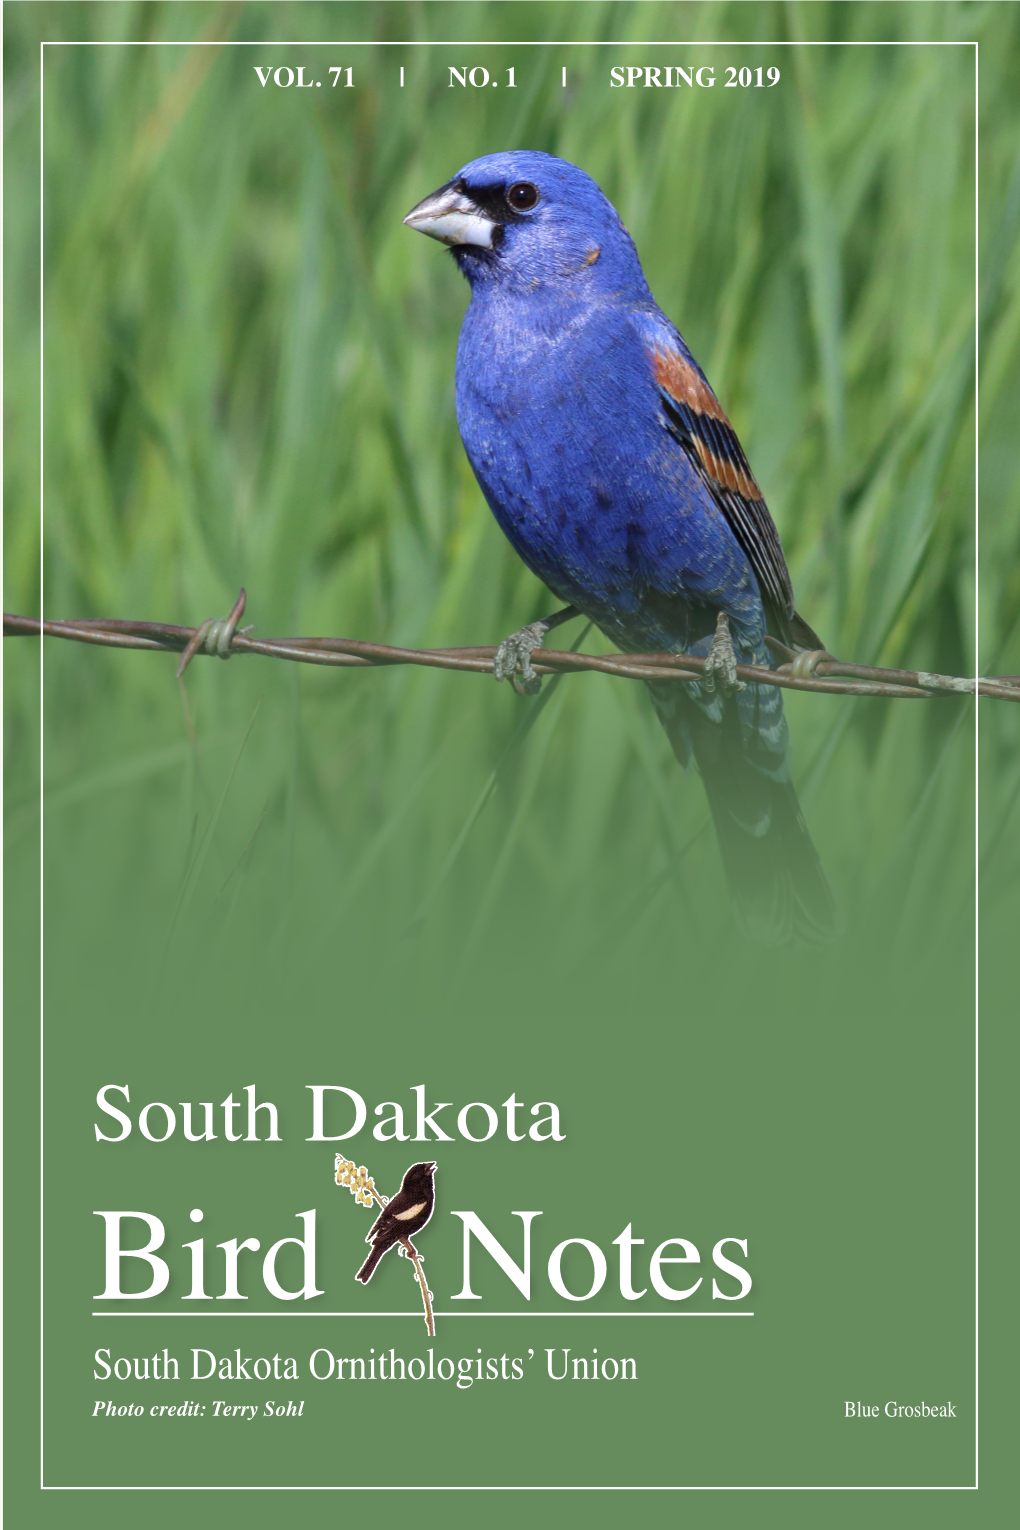 South Dakota Ornithologists' Union